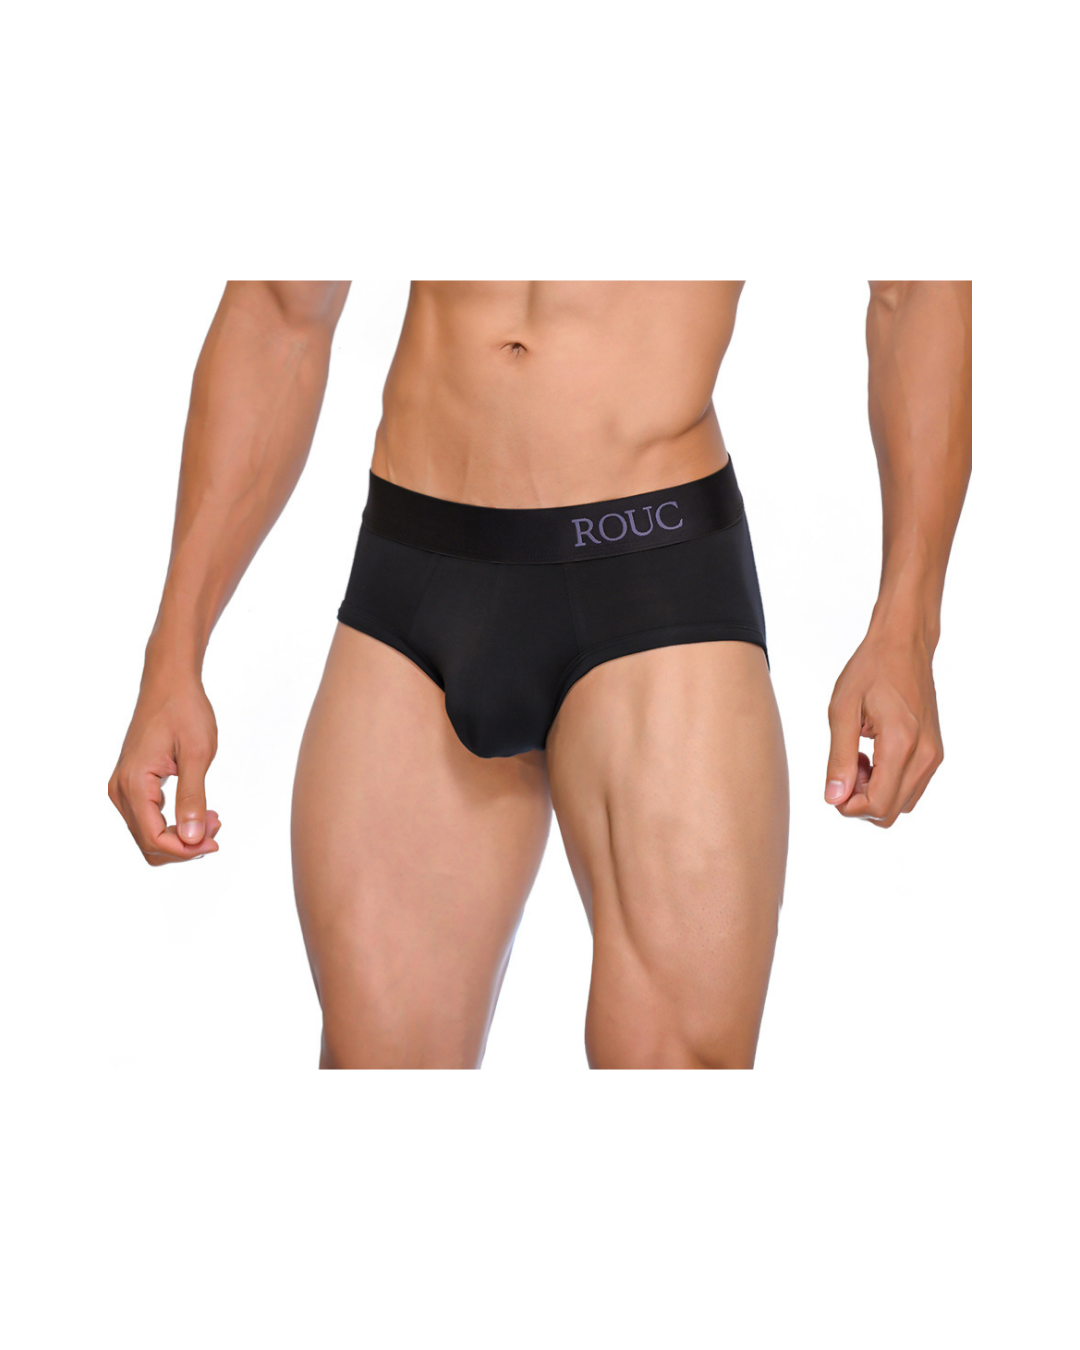 CX05SP Sports Thong - men's sexy underwear